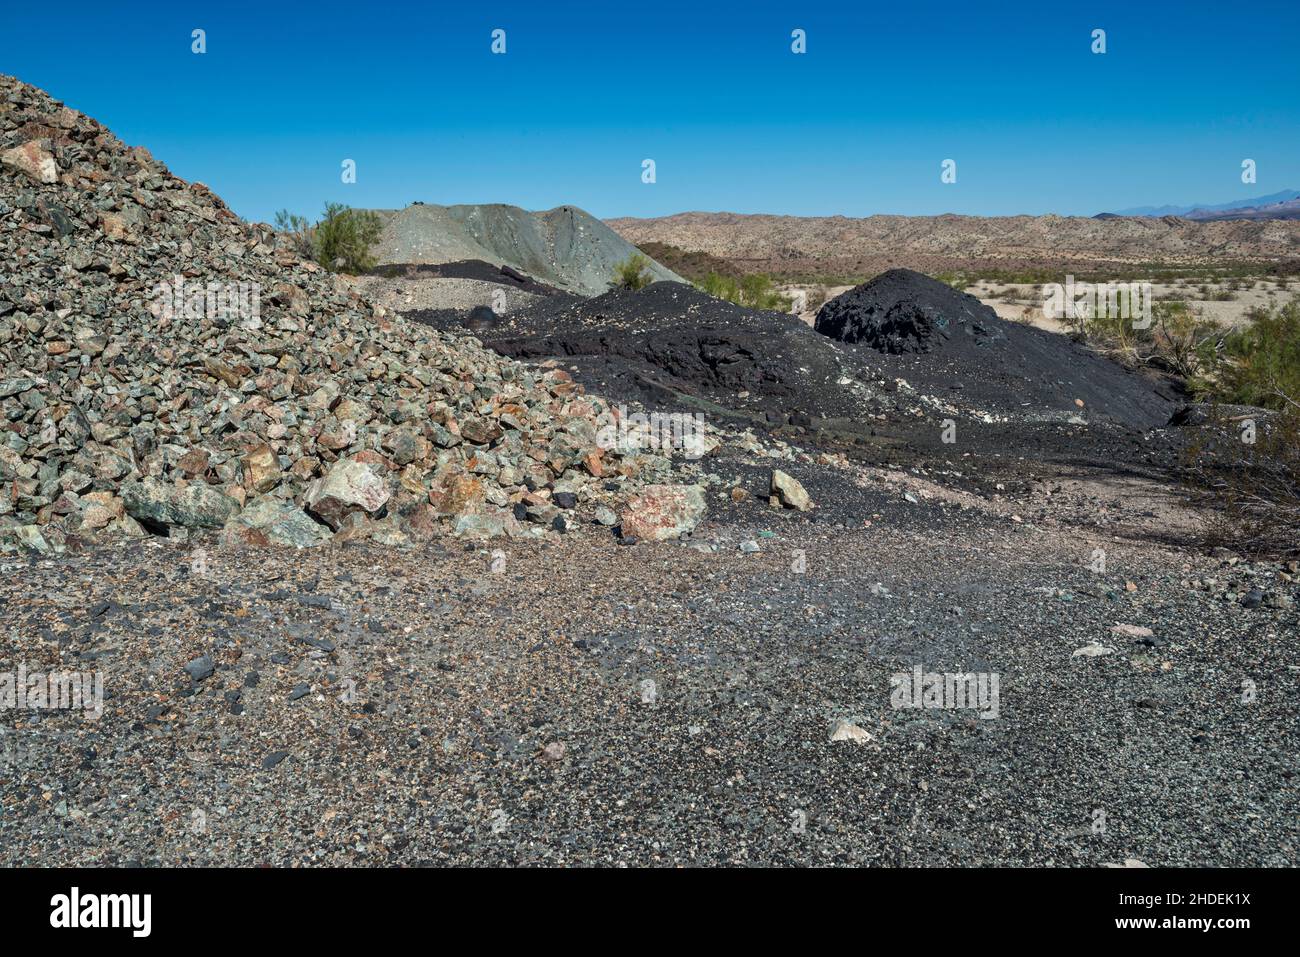 Abfallgestein (grau), Schlacke (schwarz) in der Nähe der Kupferschmelze in Swansea Copper Mining Townsite, Buckskin Mountains, Sonoran Desert, Arizona, USA Stockfoto